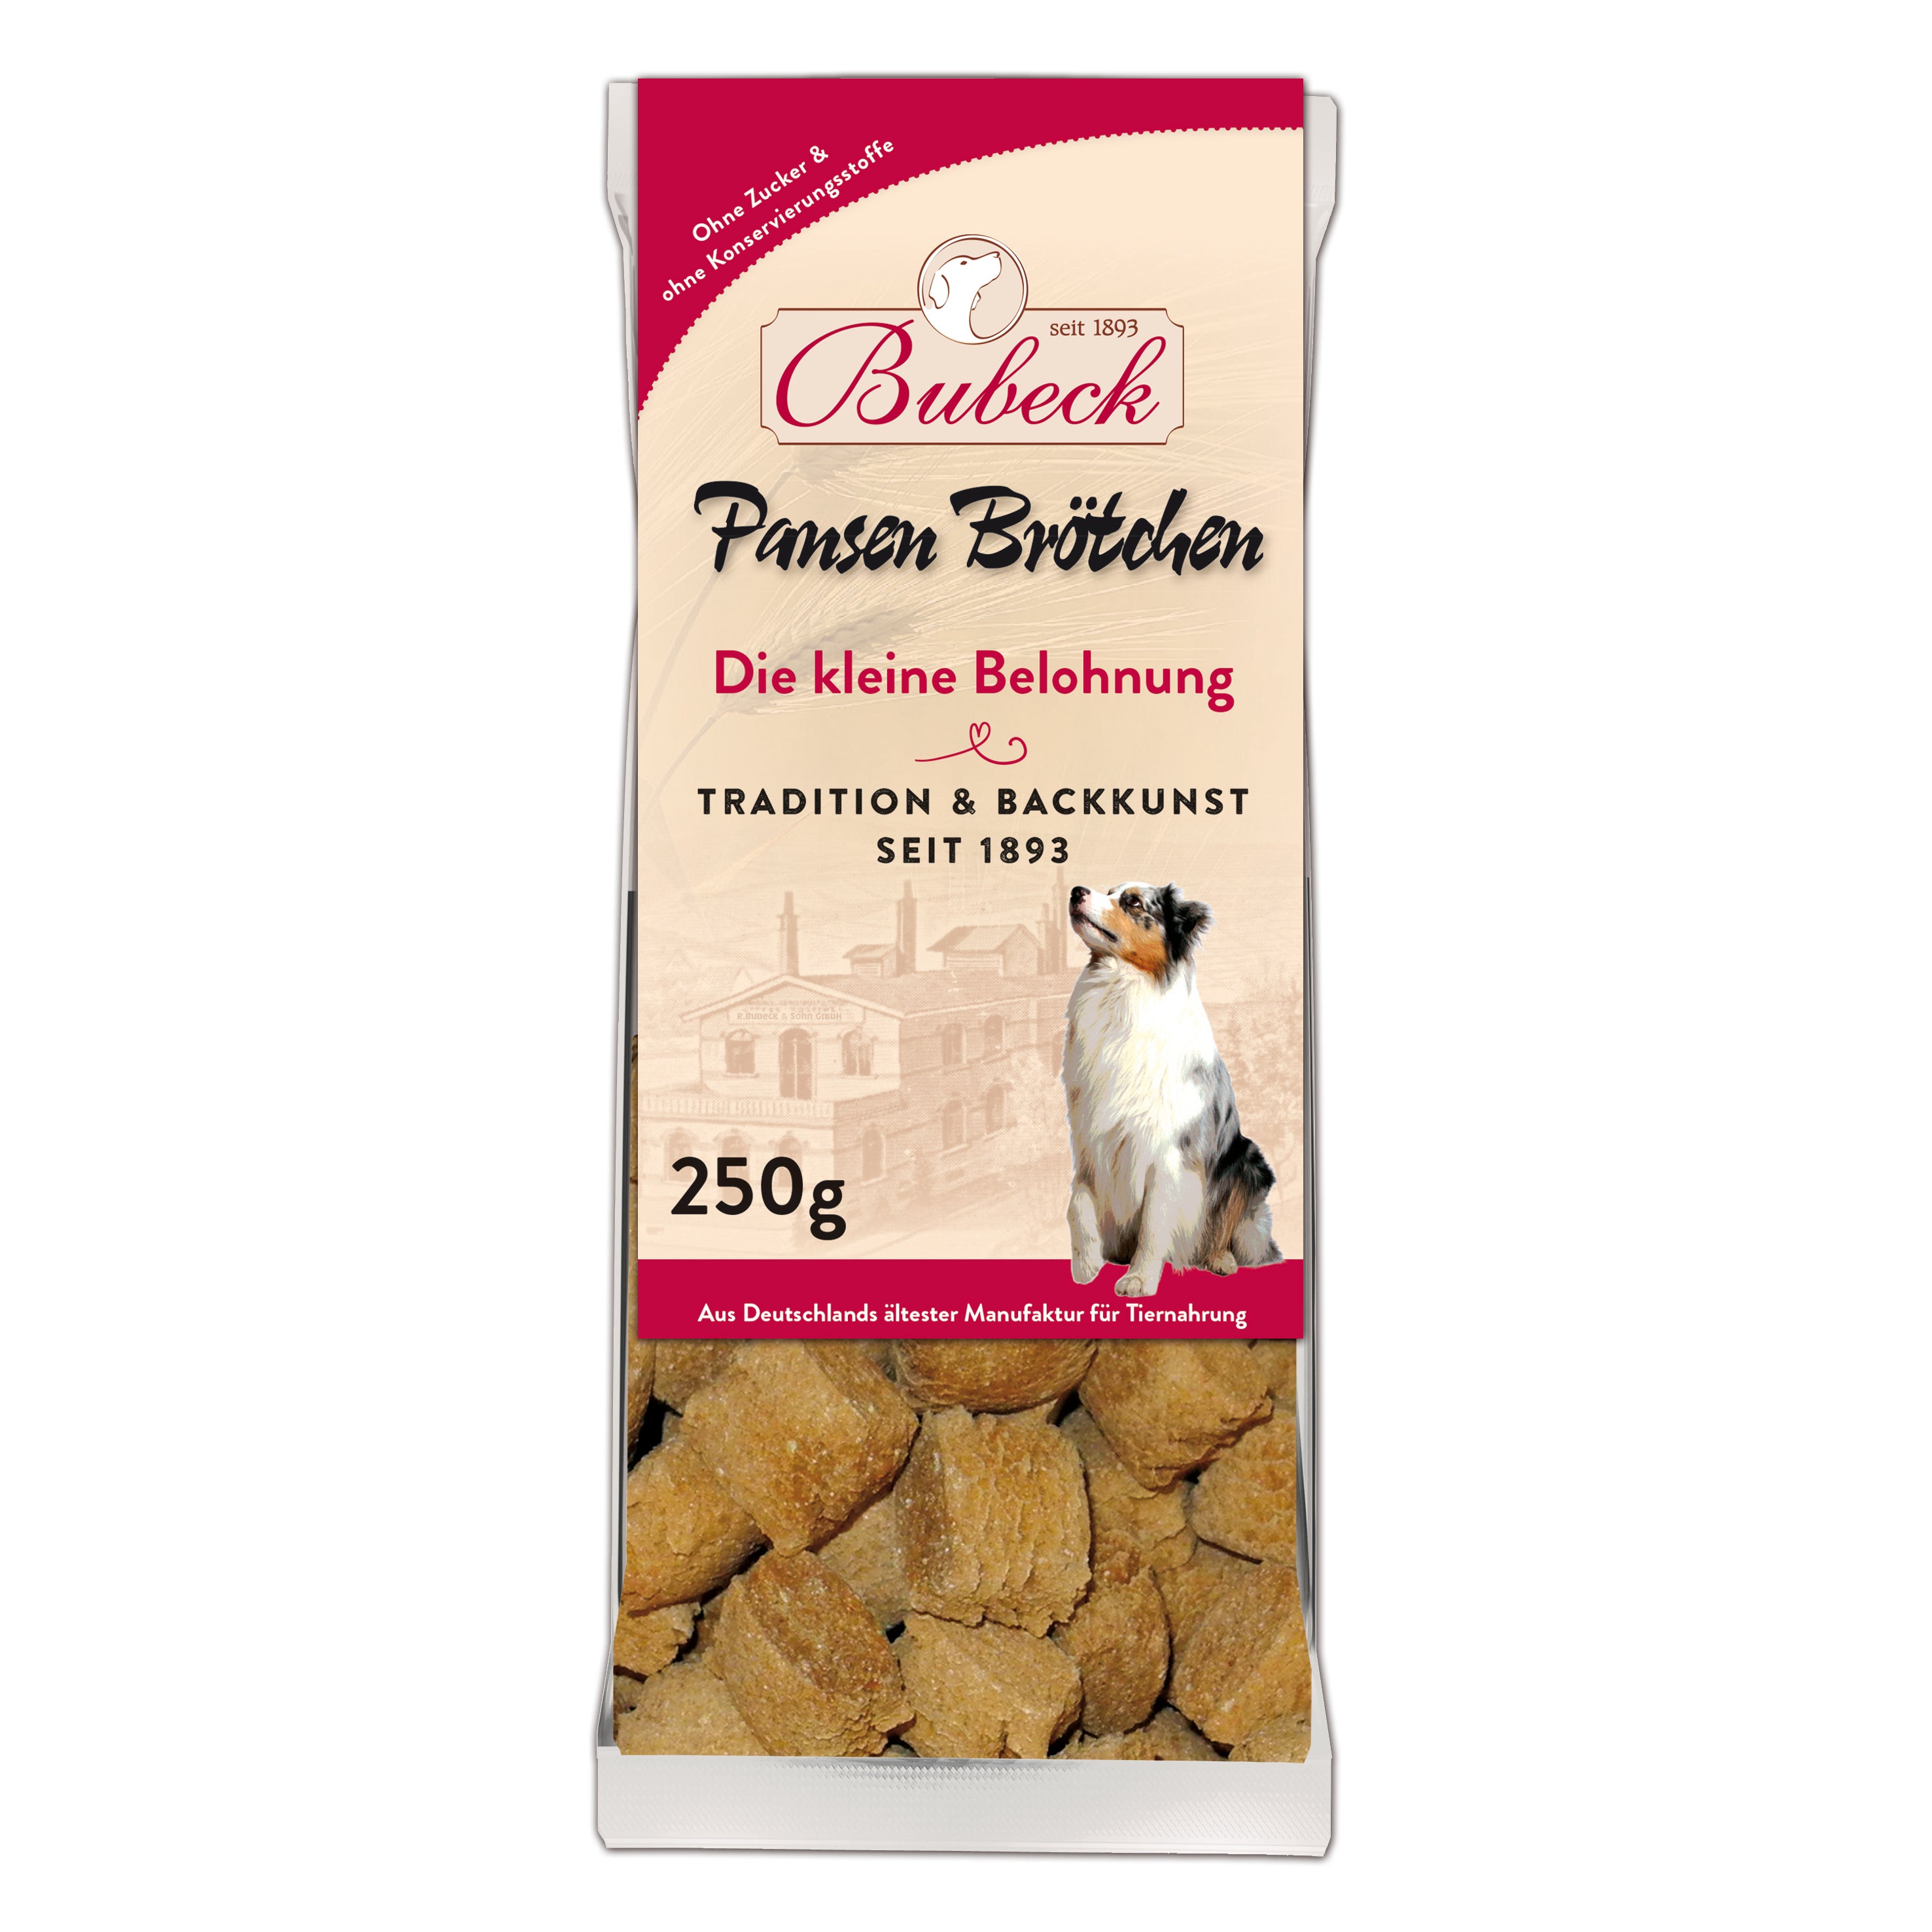 Artikel mit dem Namen Bubeck Pansen Brötchen im Shop von zoo.de , dem Onlineshop für nachhaltiges Hundefutter und Katzenfutter.